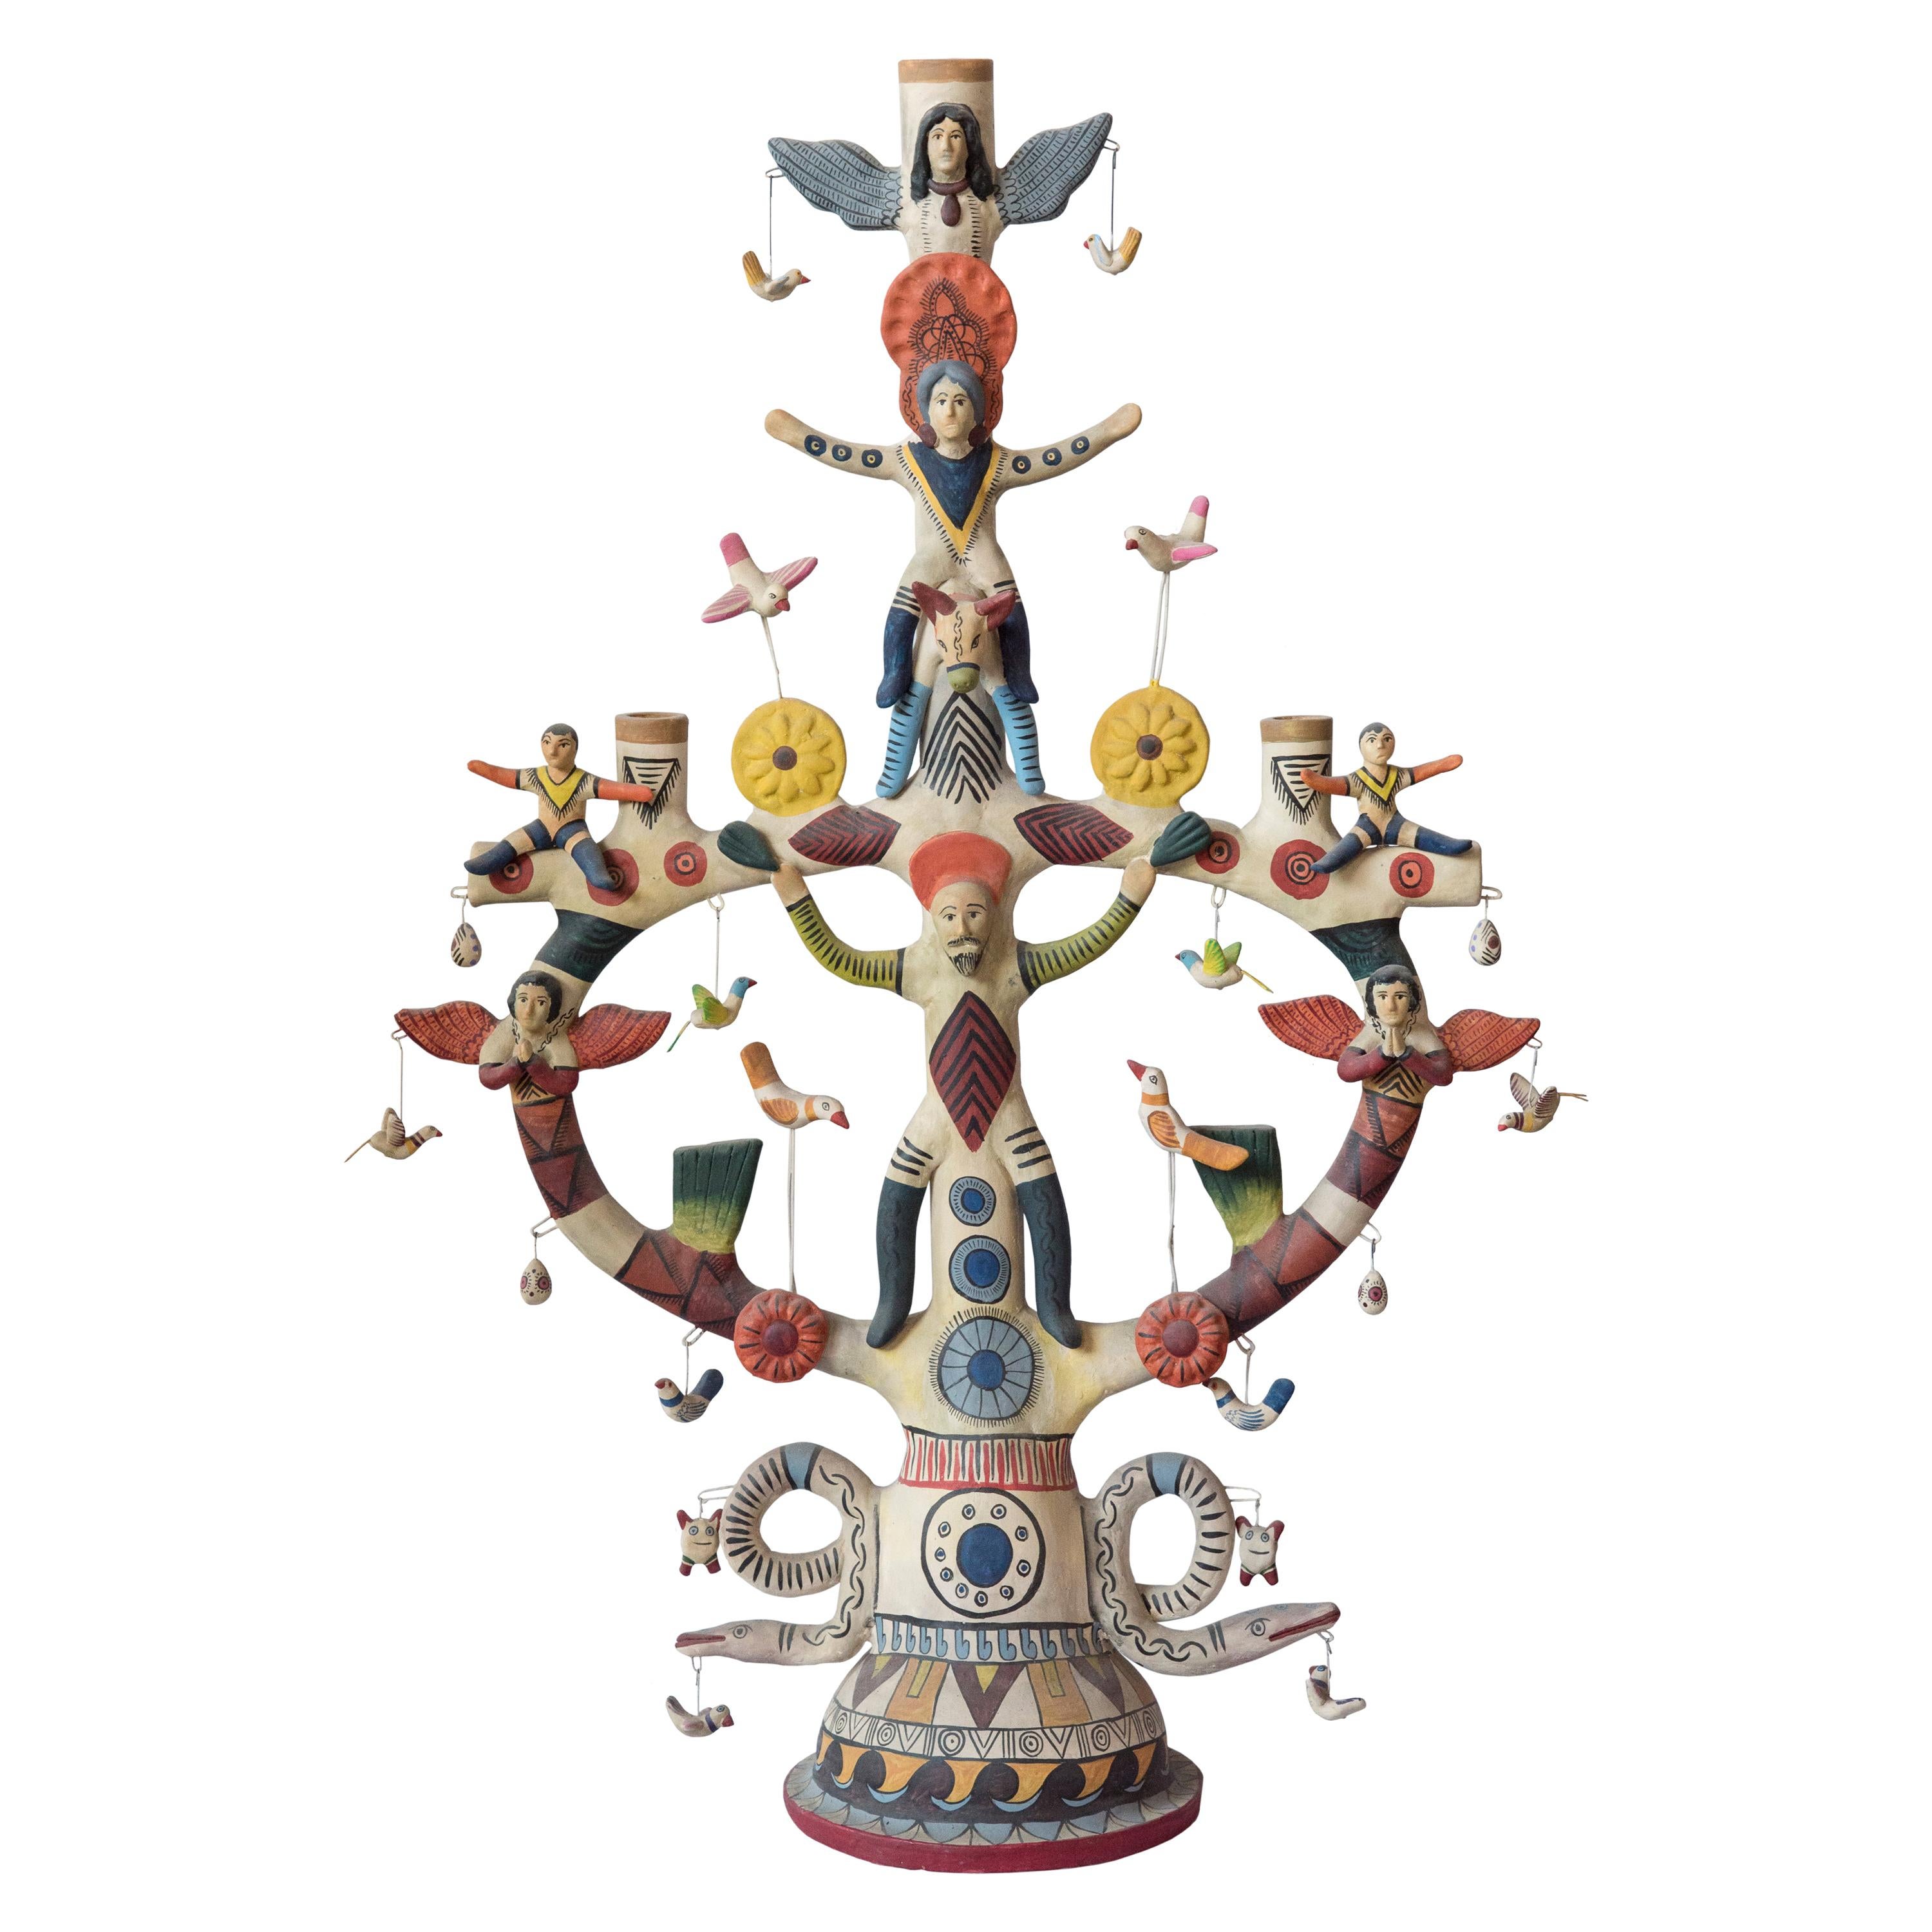 Mexican Antique Style Arbol de la Vida Colorful Folk Art Candelabra Ceramic Clay